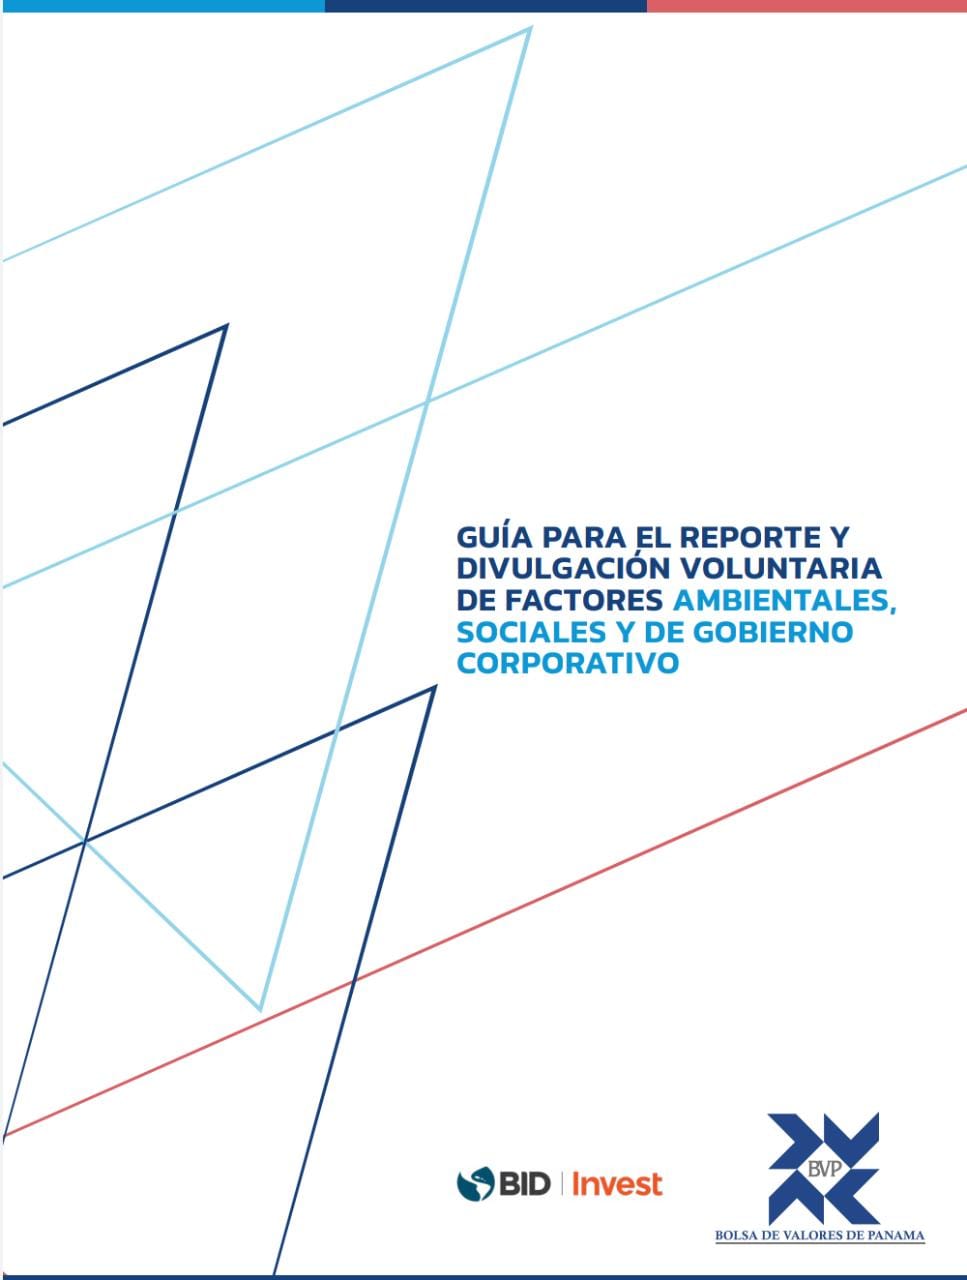 Guía para el reporte y divulgación voluntaria de factores ambientales, sociales y de gobierno corporativo